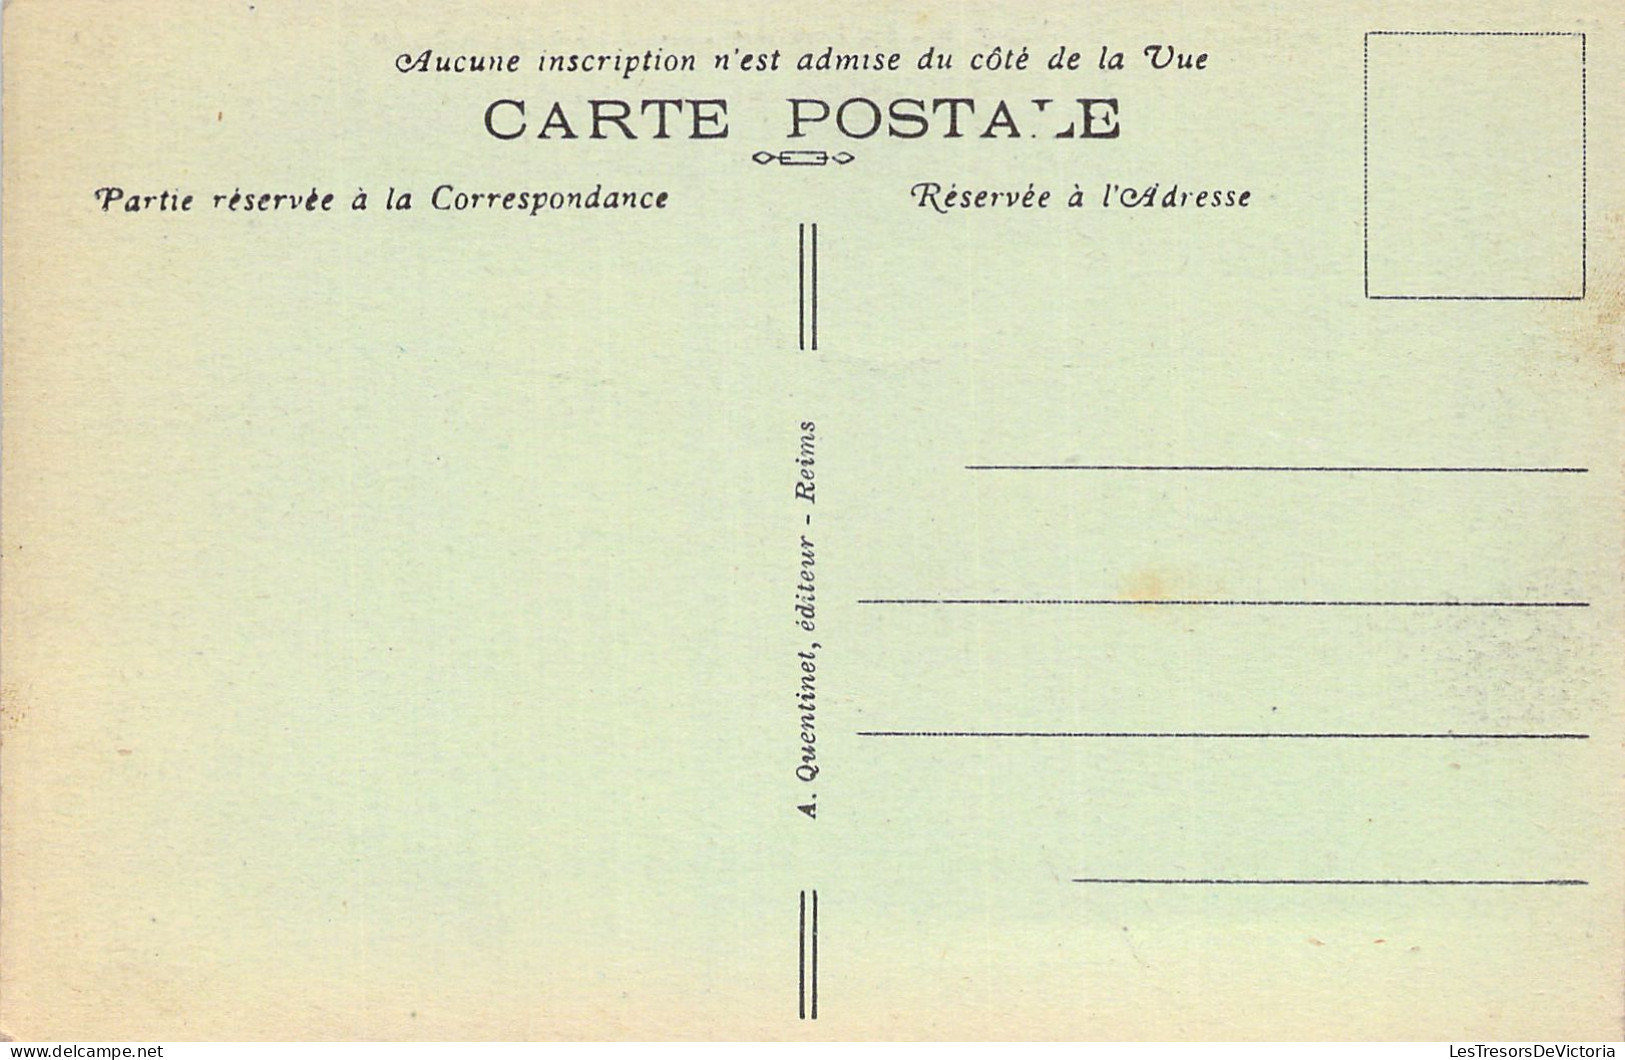 FRANCE - 51 - REIMS - Panorama Est - Vue Prise En 1914 Du Haut De La Cathédrale - Cartes Postales Anciennes - Reims